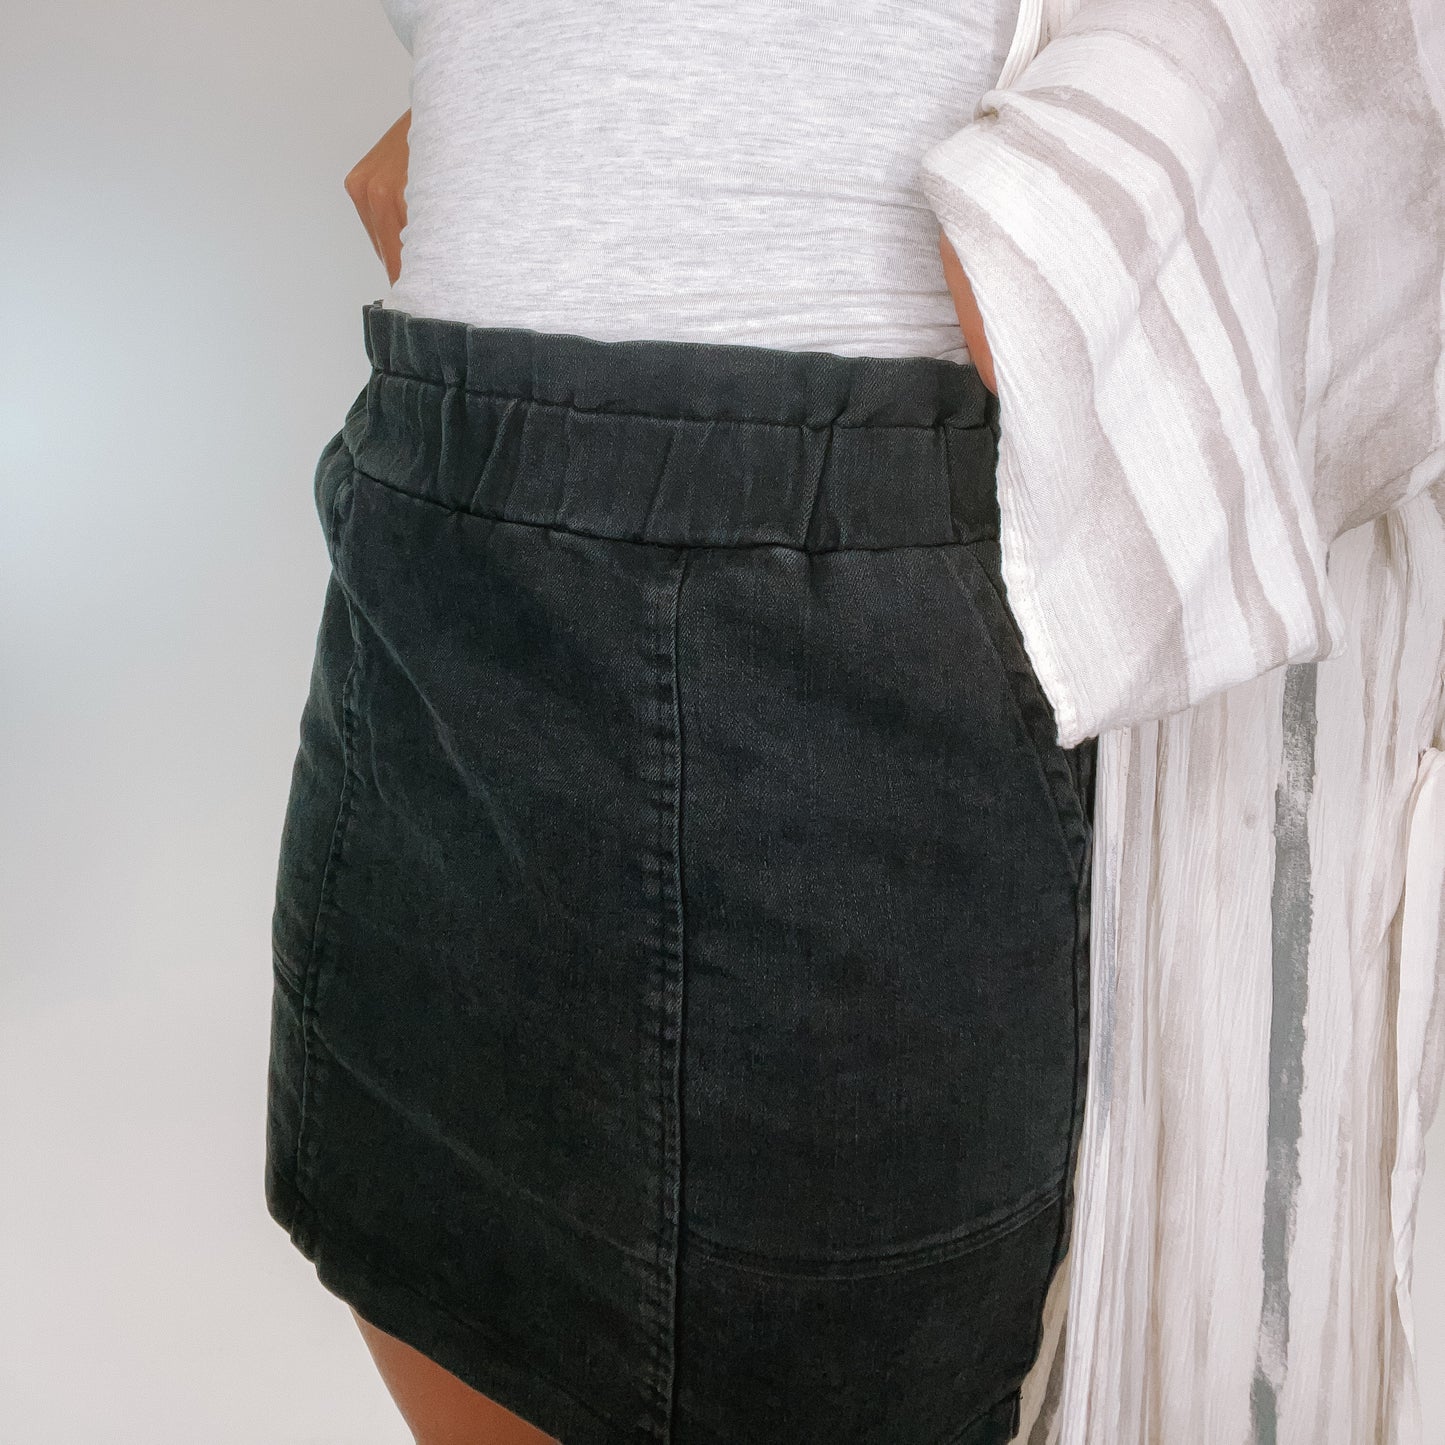 The Paperbag Mini Skirt